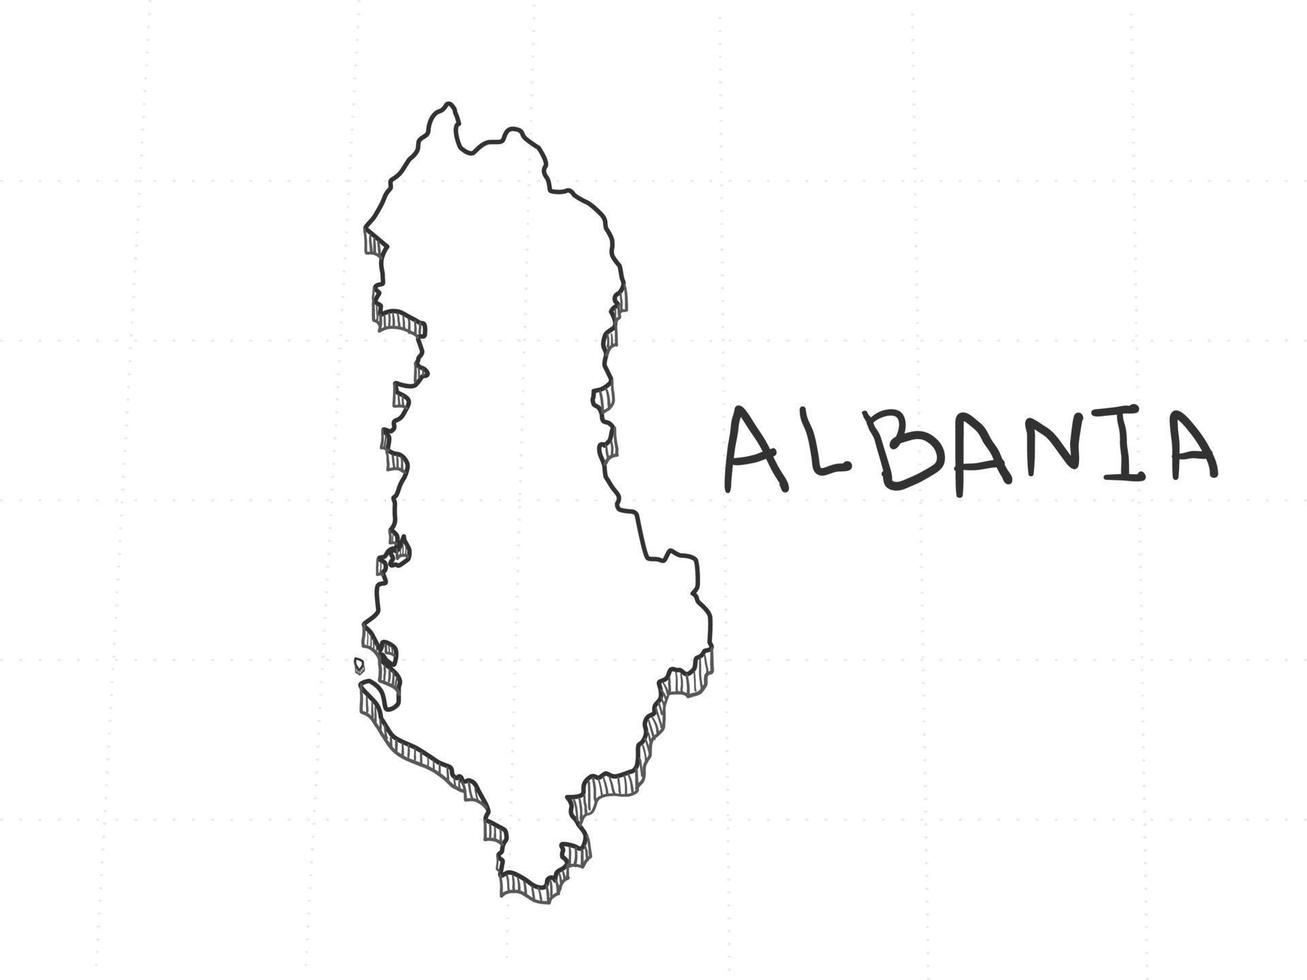 dibujado a mano del mapa 3d de albania sobre fondo blanco. vector